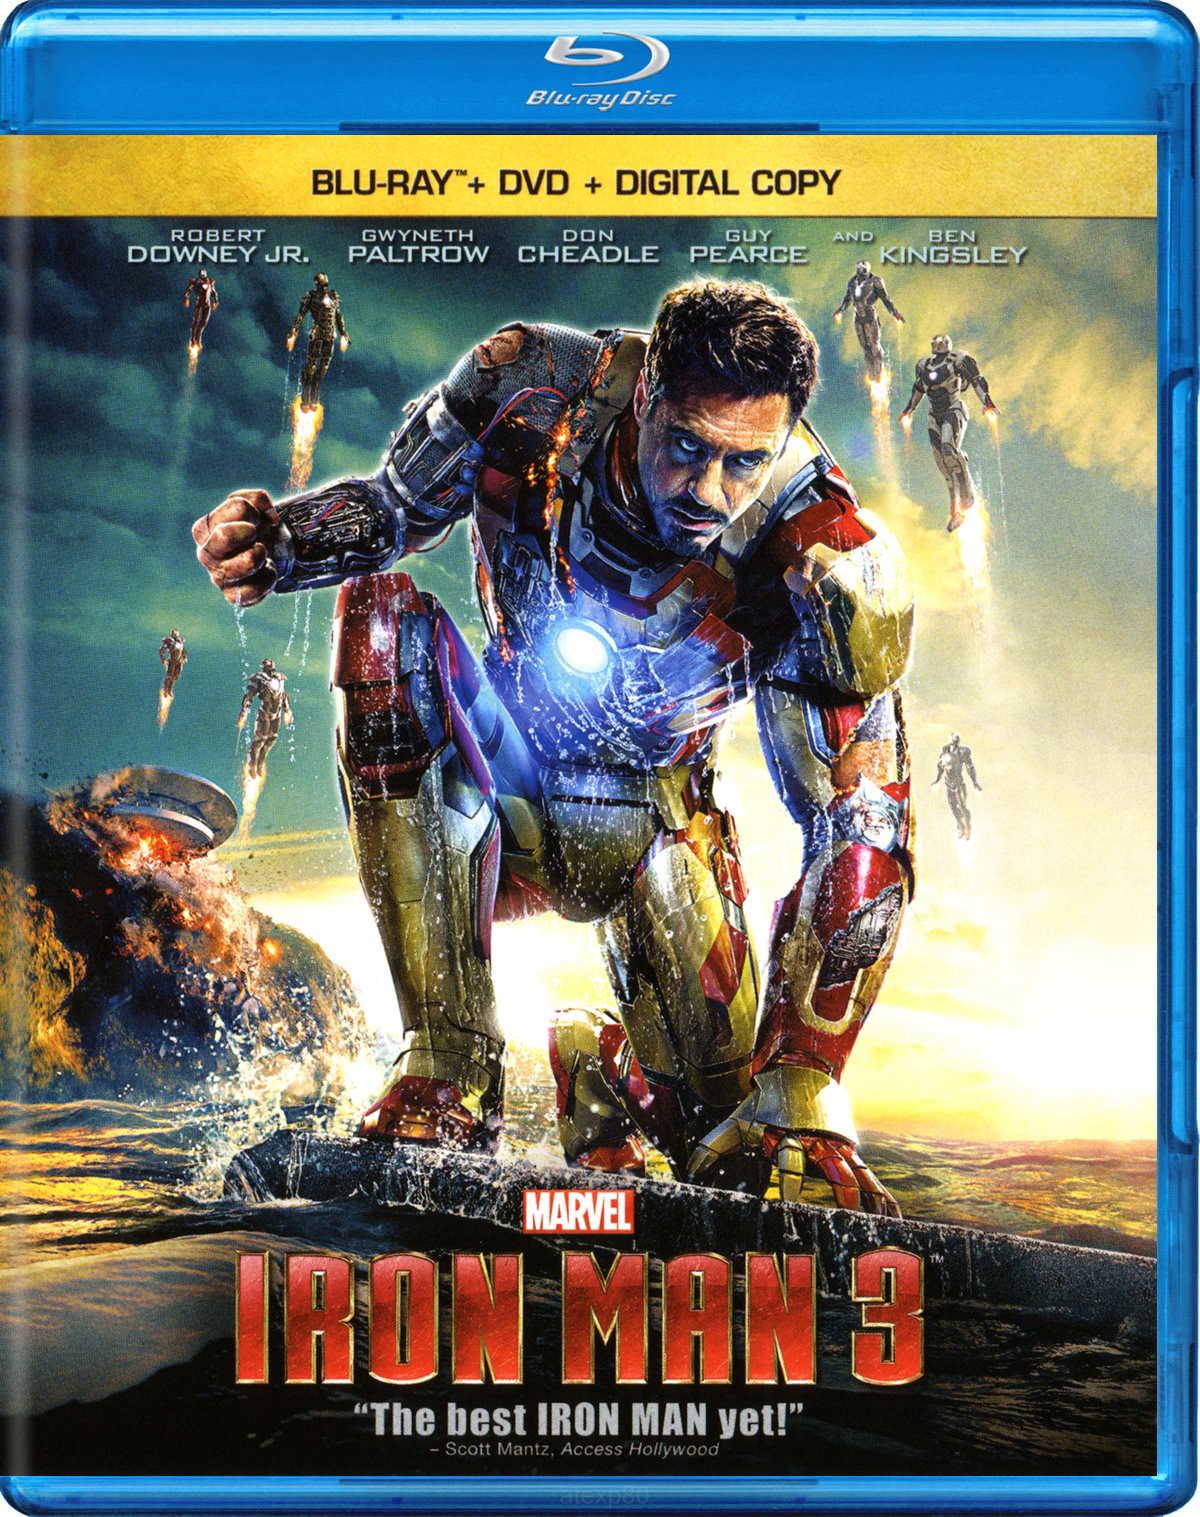 Iron man 3 blu-ray torrent dj ozon macarena mp3 torrent